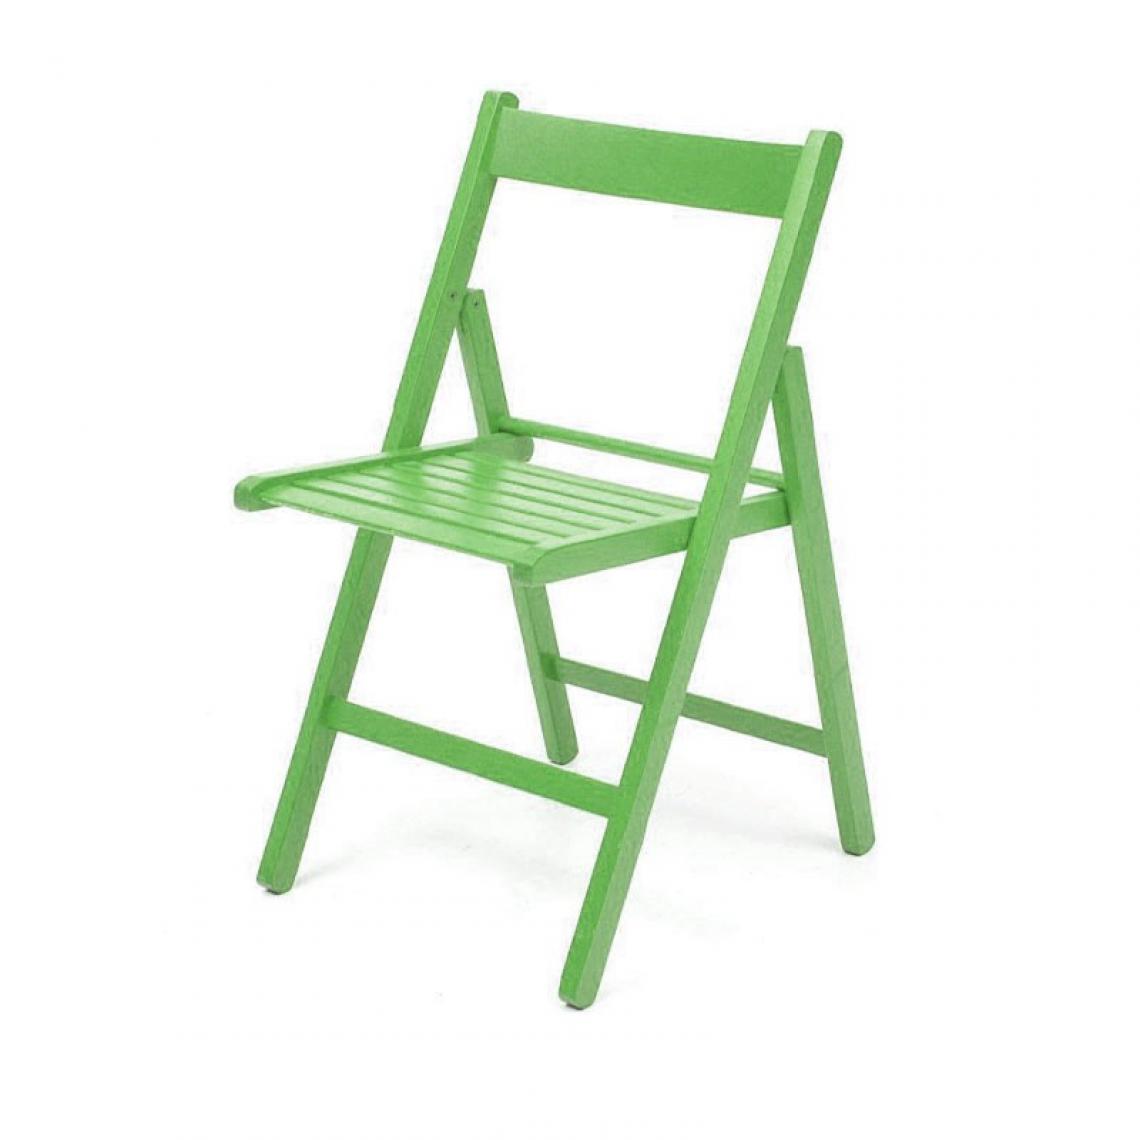 Webmarketpoint - Chaise pliante en hêtre vert de haute qualité 43x48xh.79 cm - Chaises